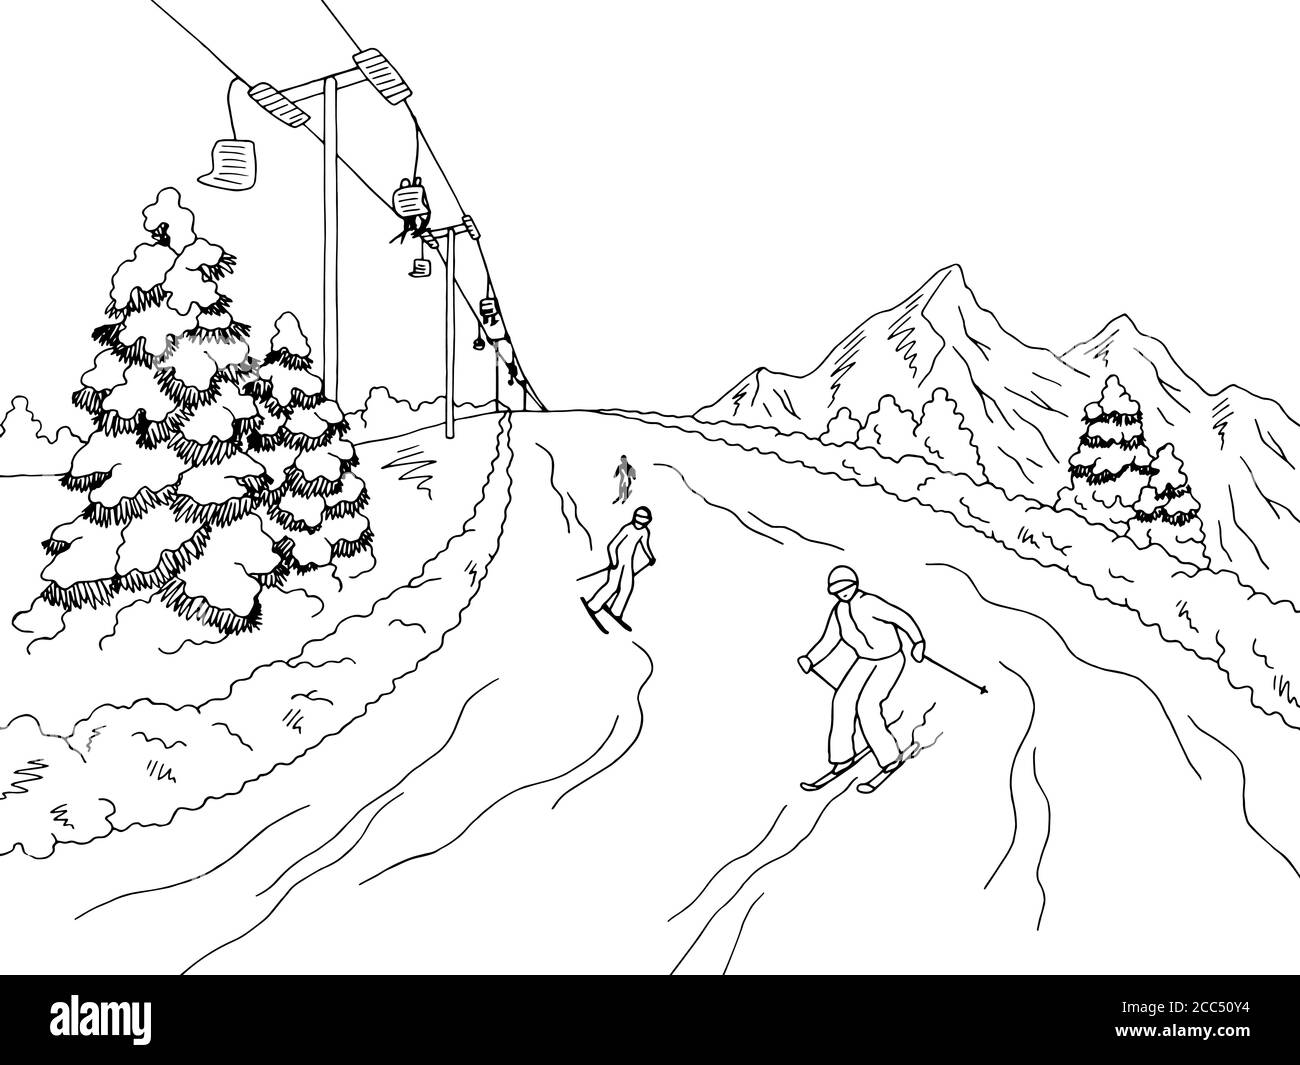 Les gens skier à la montagne graphique noir blanc paysage esquisse vecteur d'illustration Illustration de Vecteur